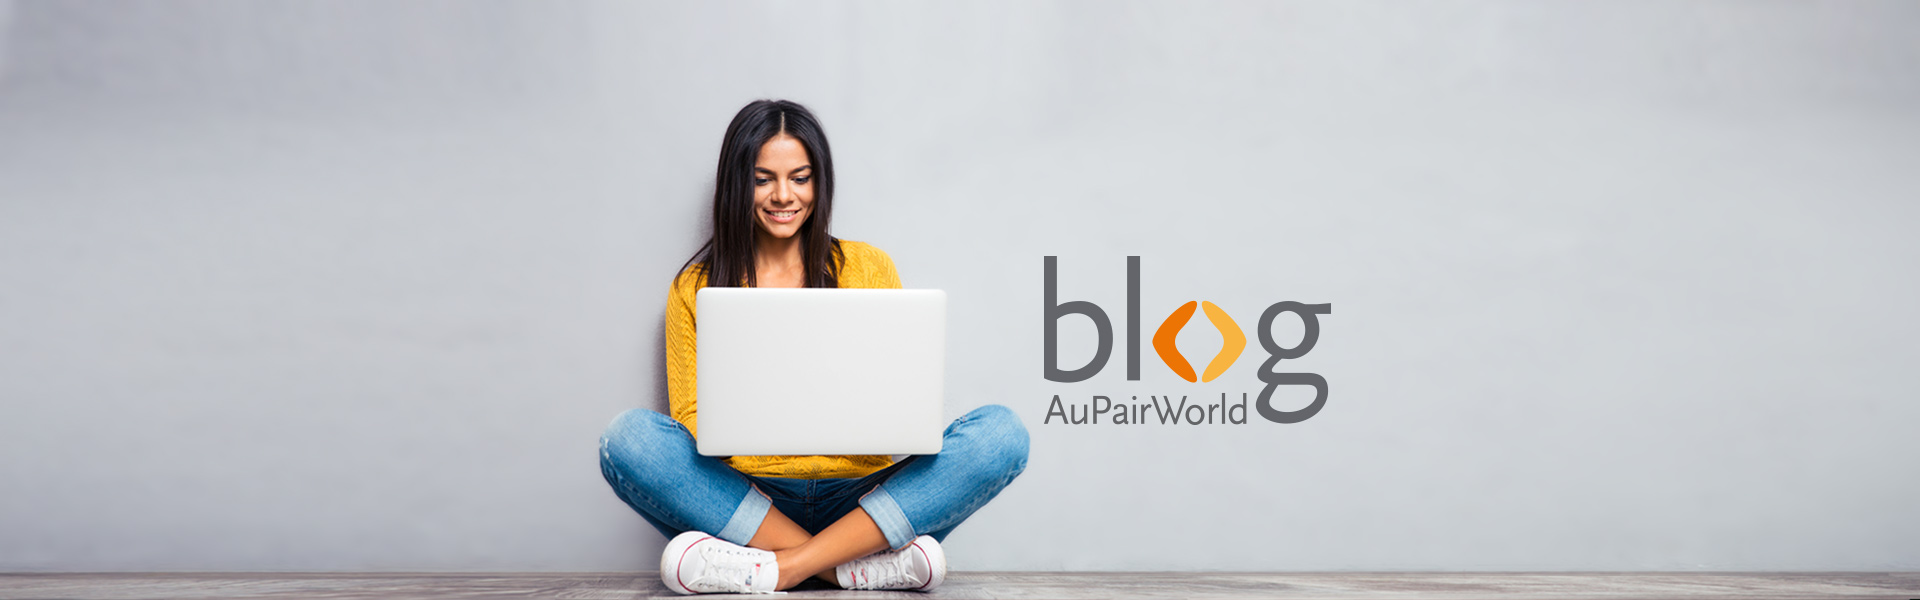 AuPairWorld Blog